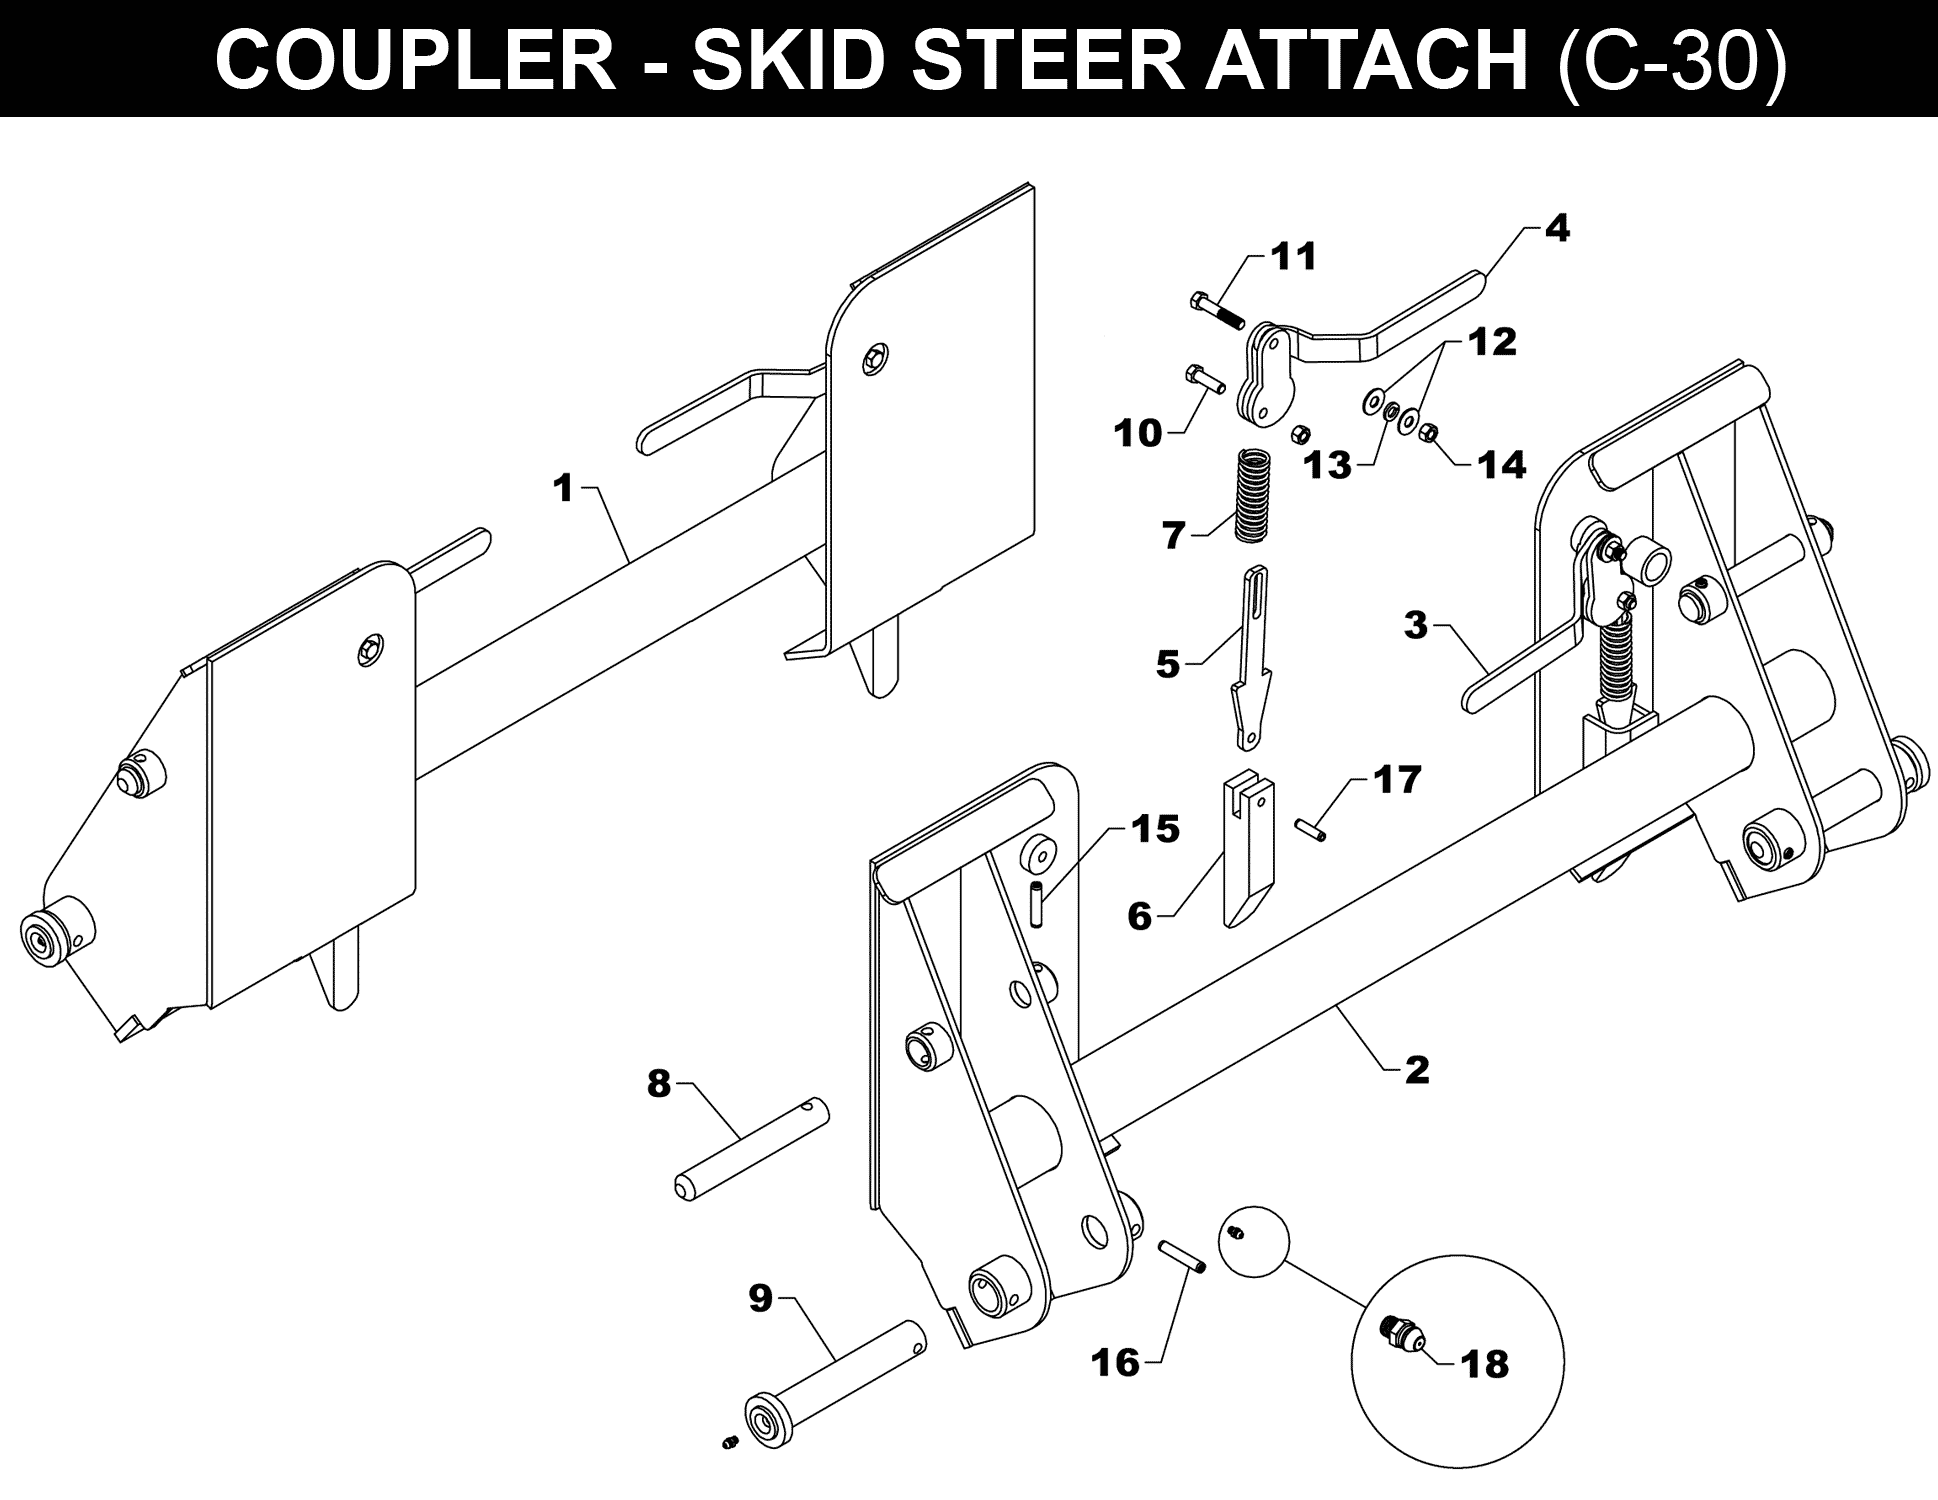 SKID STEER COUPLER - C-30